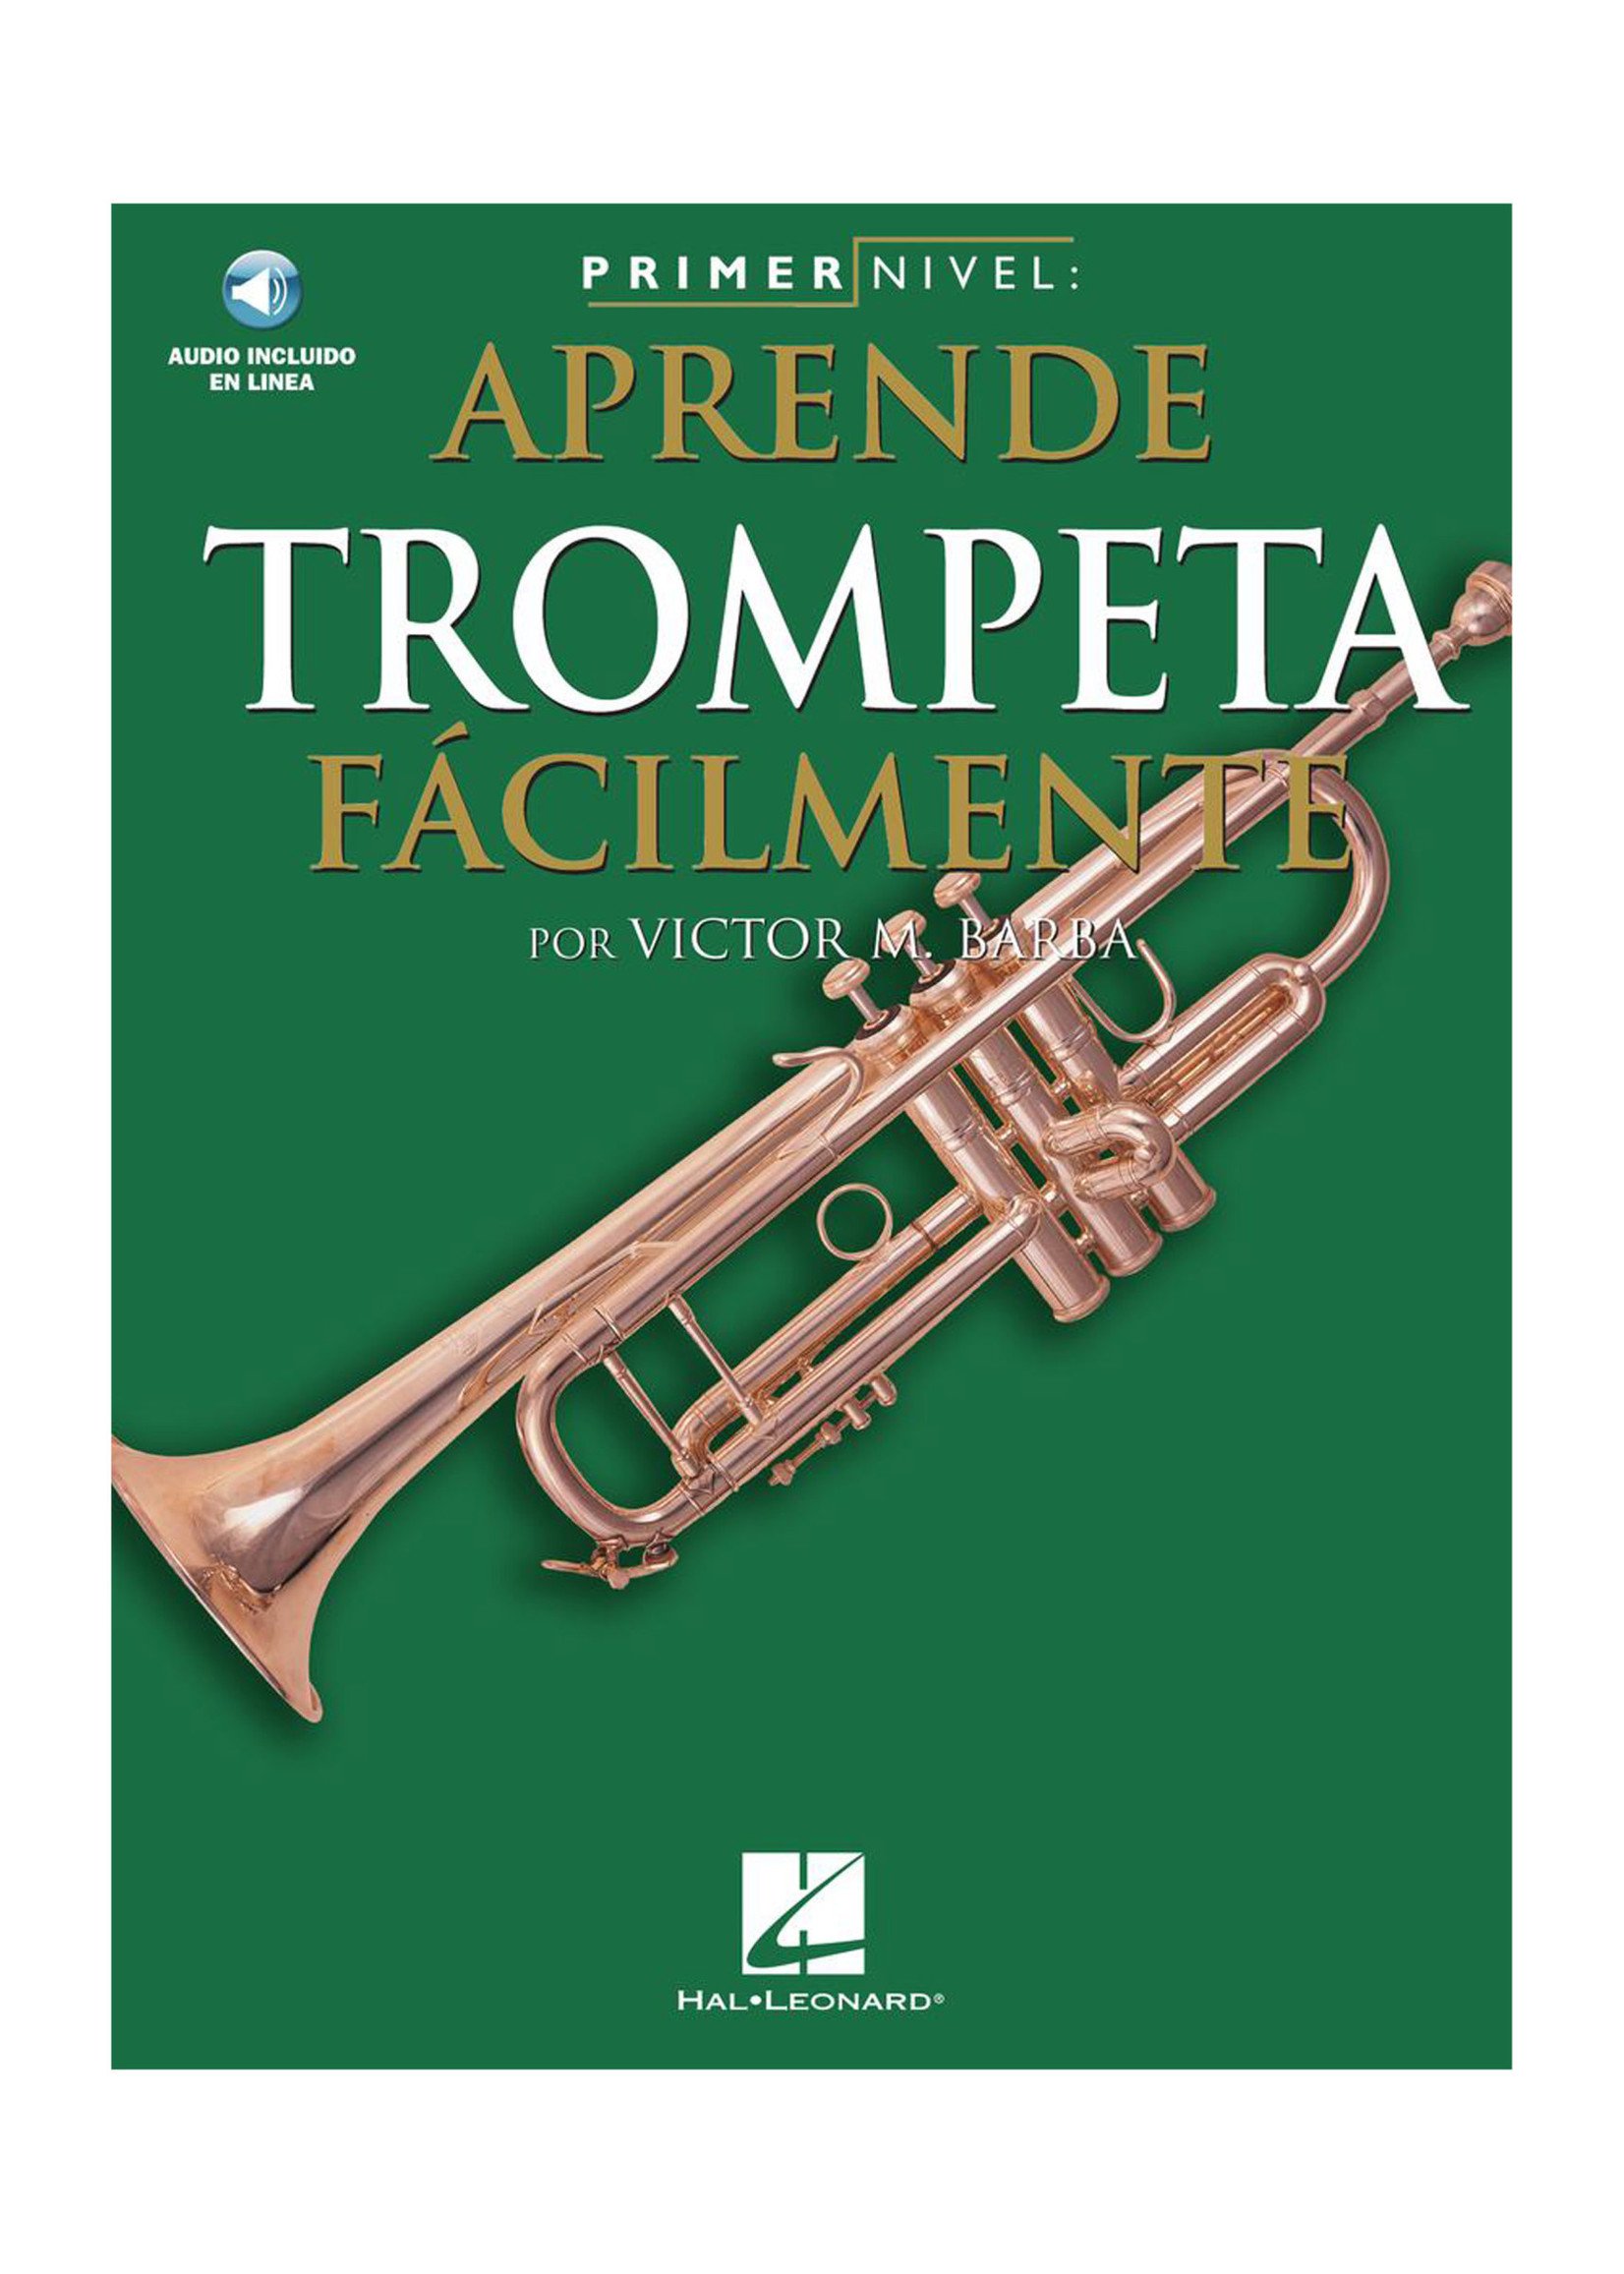 Hal Leonard Primer Nivel: Aprende Trompeta Facilmente